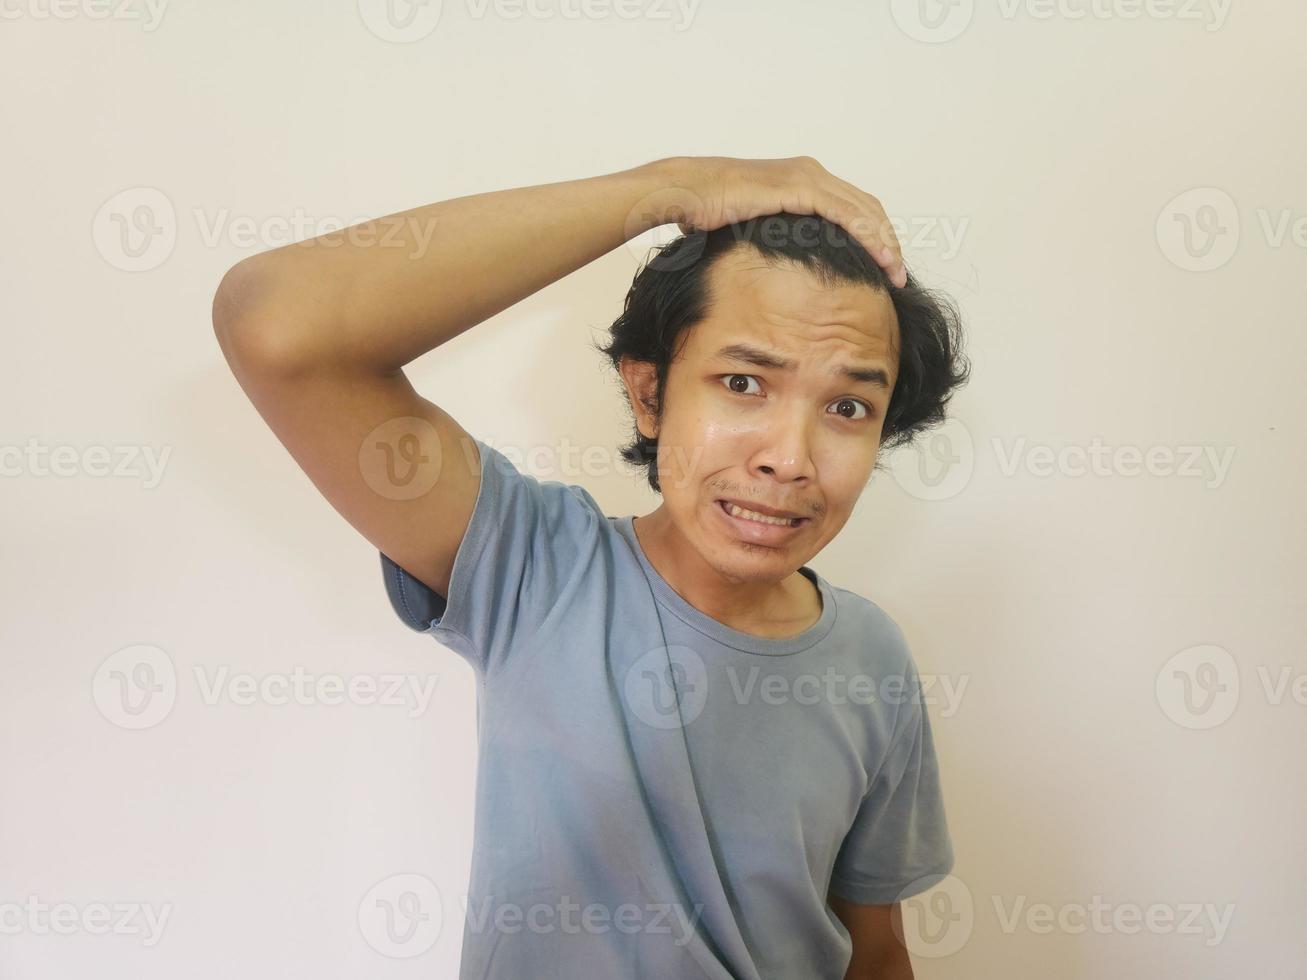 chocado face do ásia homem obtendo Careca e perdido cabelo dentro isolado branco fundo foto